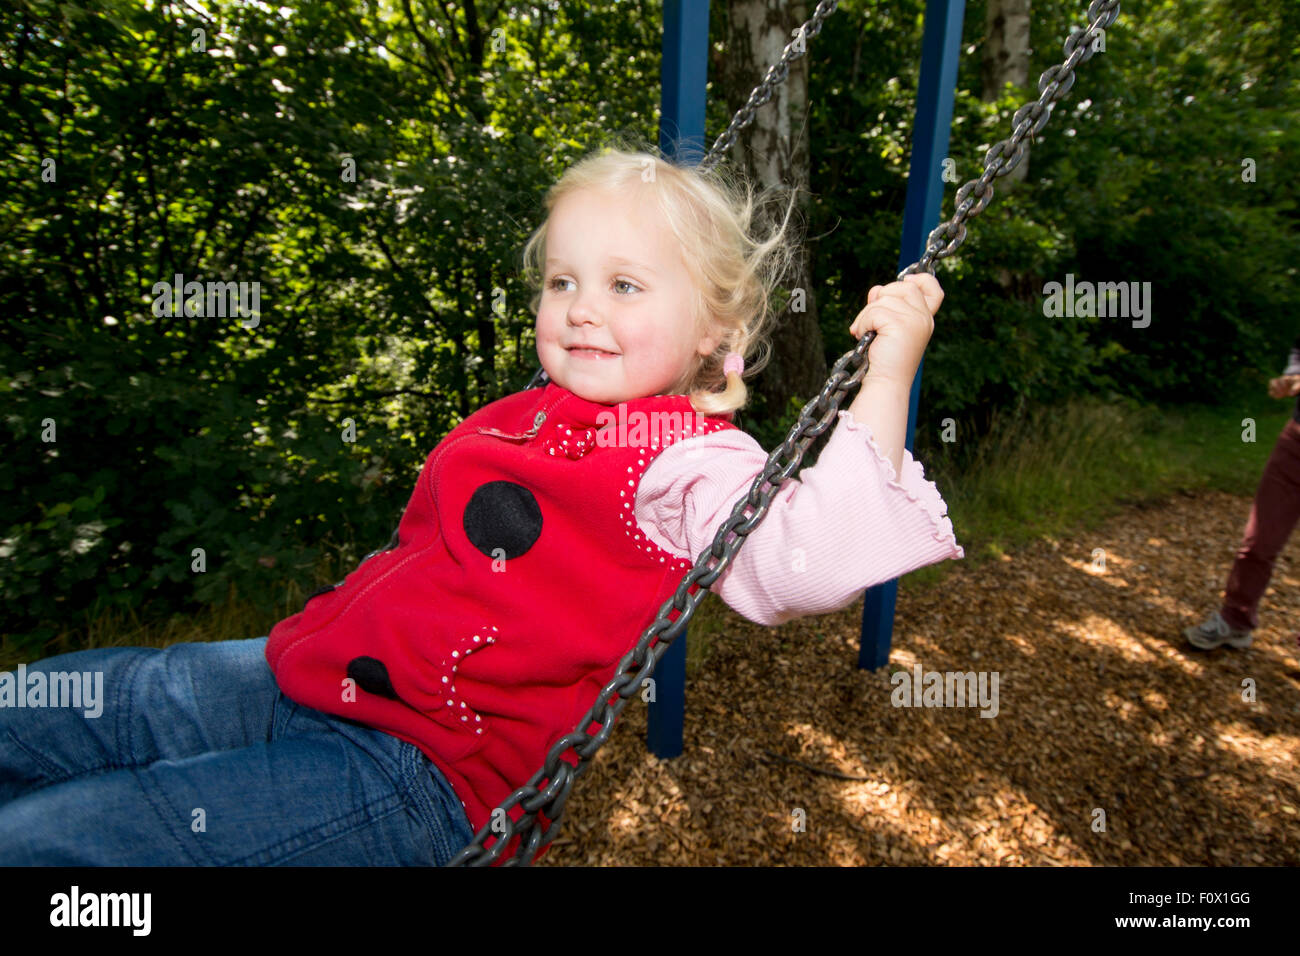 Little girl on swing. Stock Photo